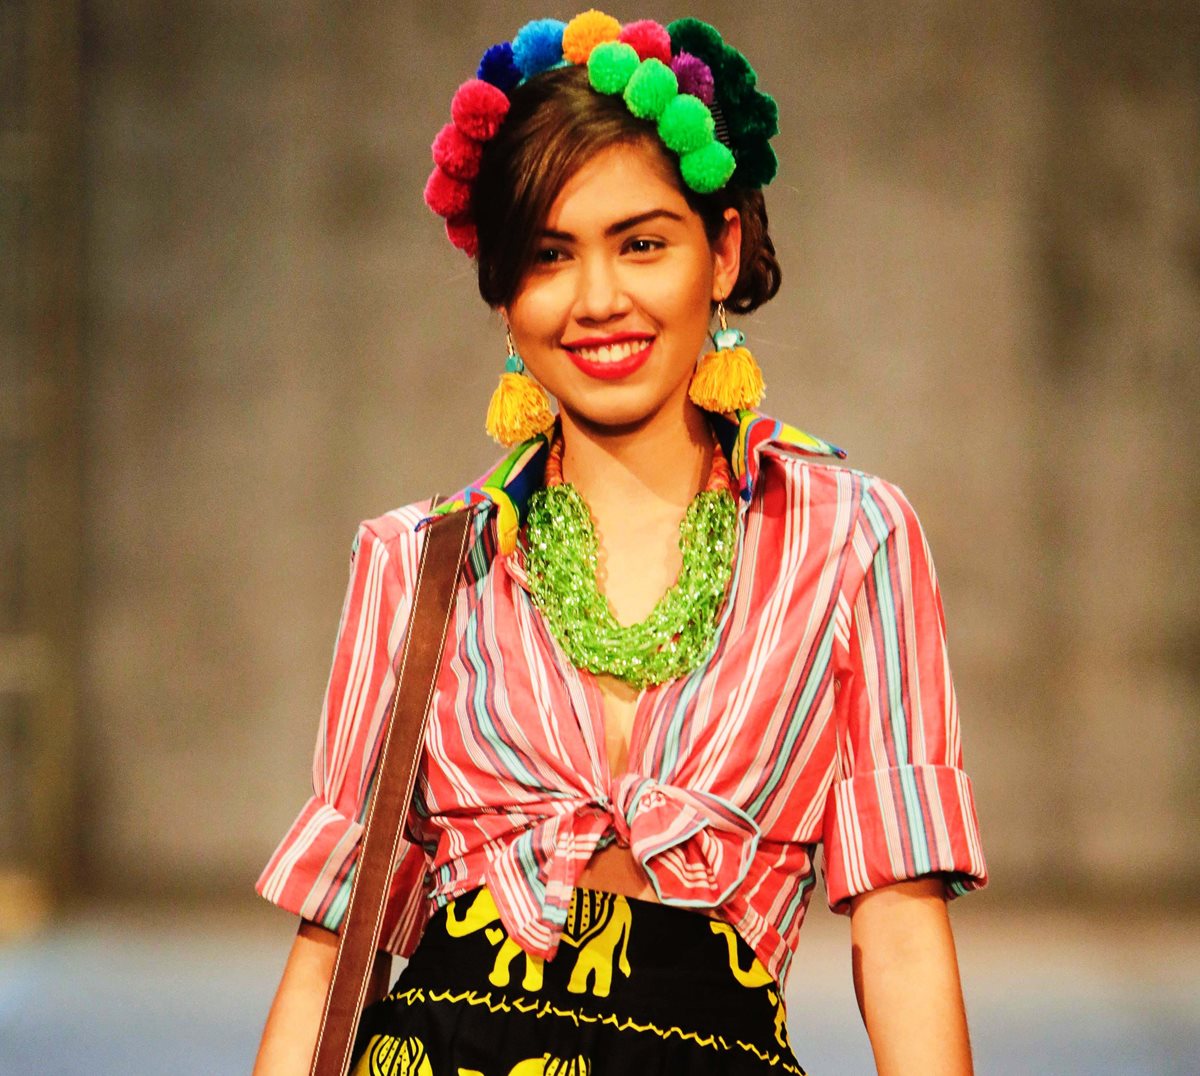 Nicaragua entra a la onda de la moda con chic tropical